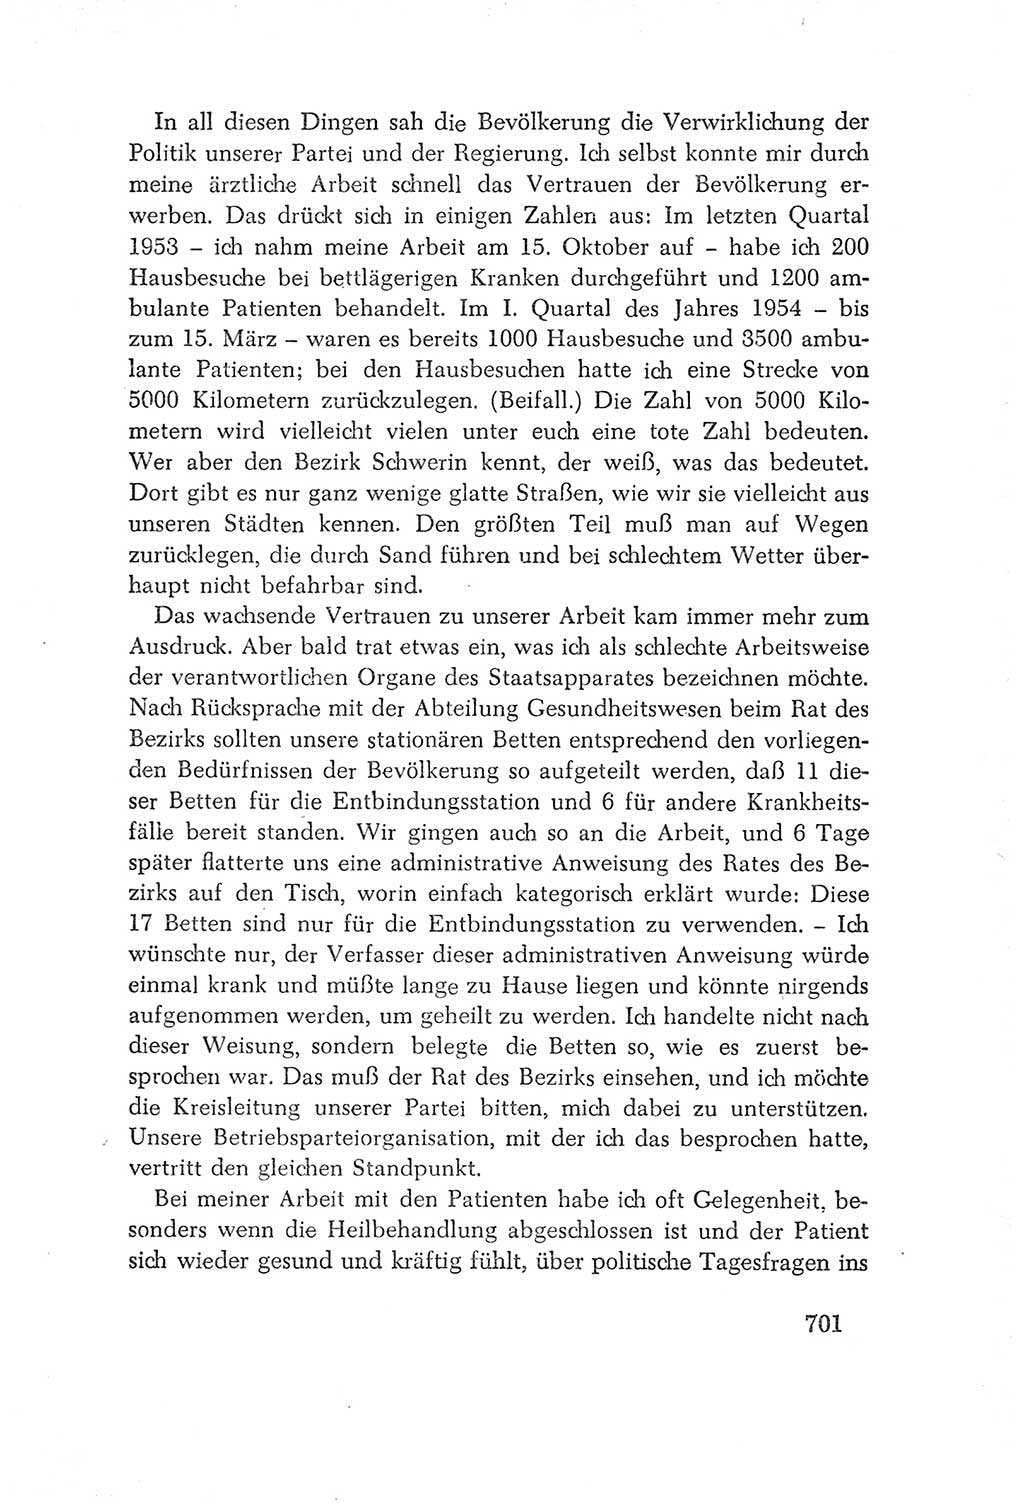 Protokoll der Verhandlungen des Ⅳ. Parteitages der Sozialistischen Einheitspartei Deutschlands (SED) [Deutsche Demokratische Republik (DDR)] 1954, Seite 701